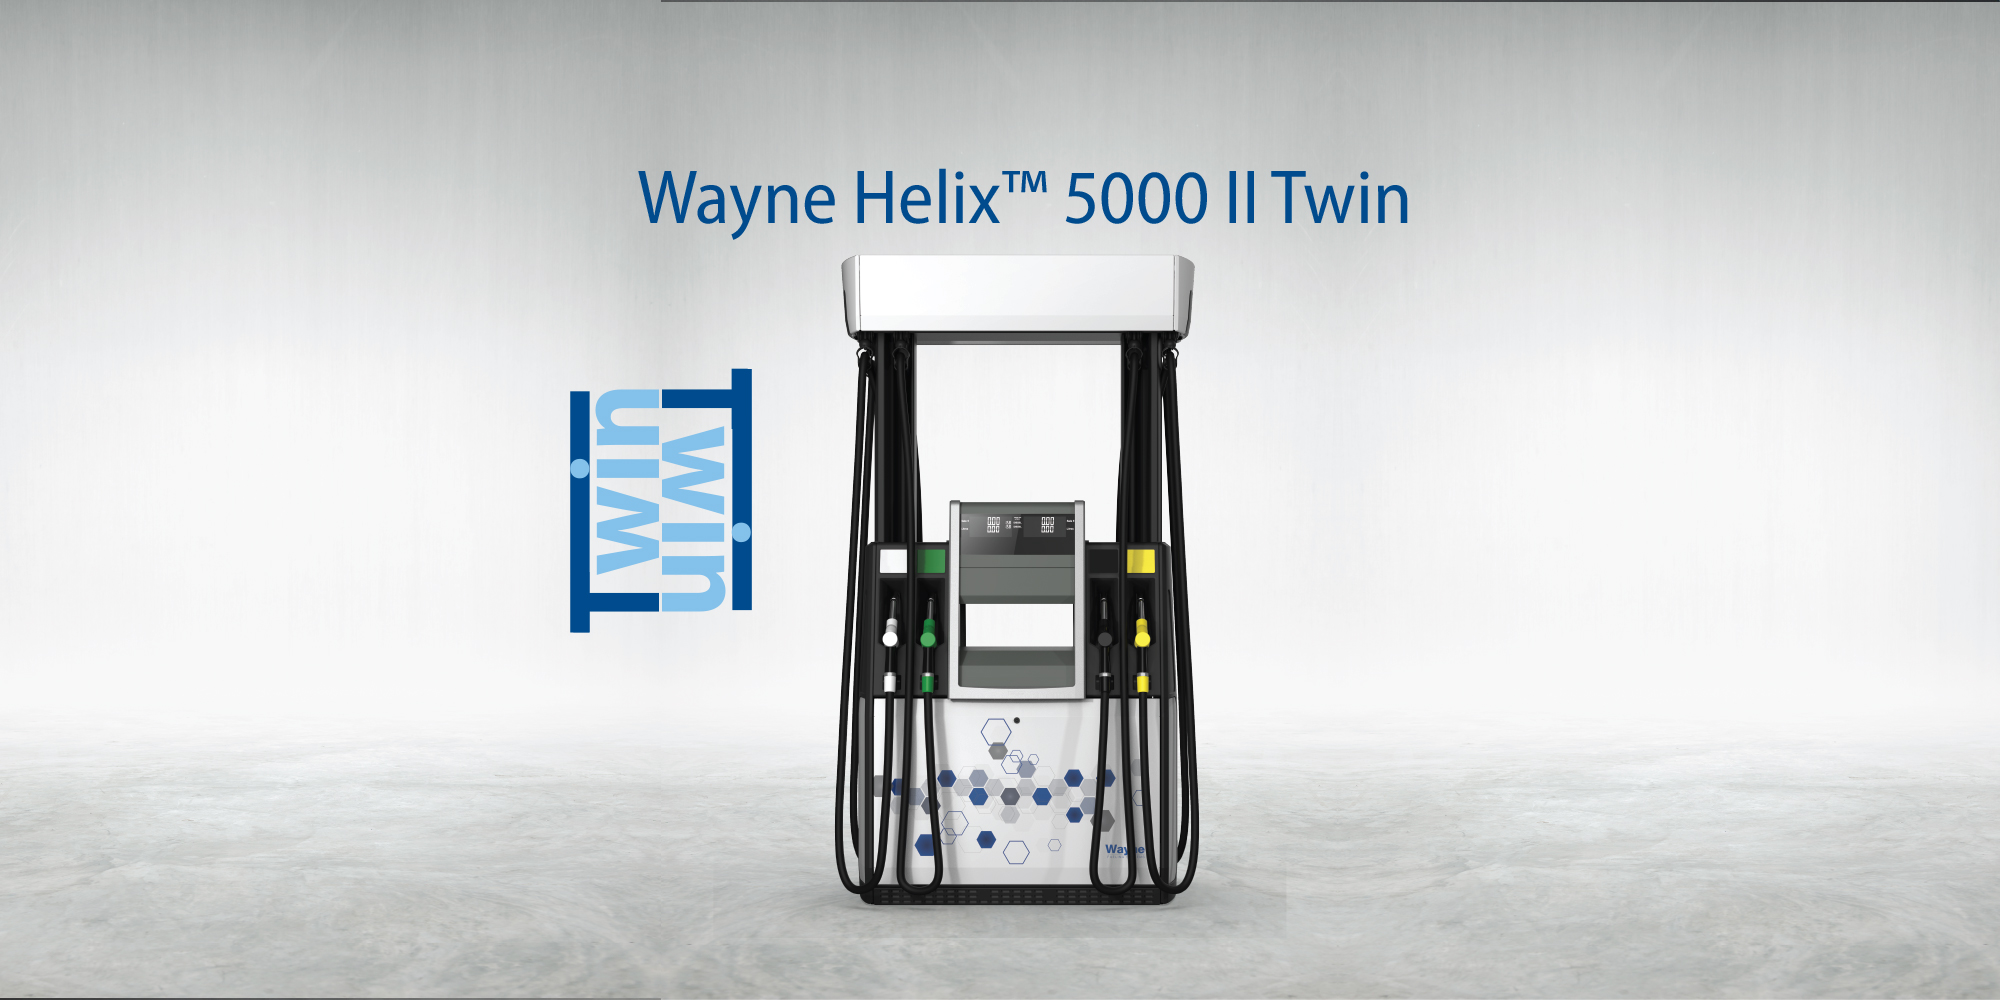 Wayne Helix 5000 II TWIN modeli ile akaryakıt istasyonlarında verimlilik artışı sağlanıyor